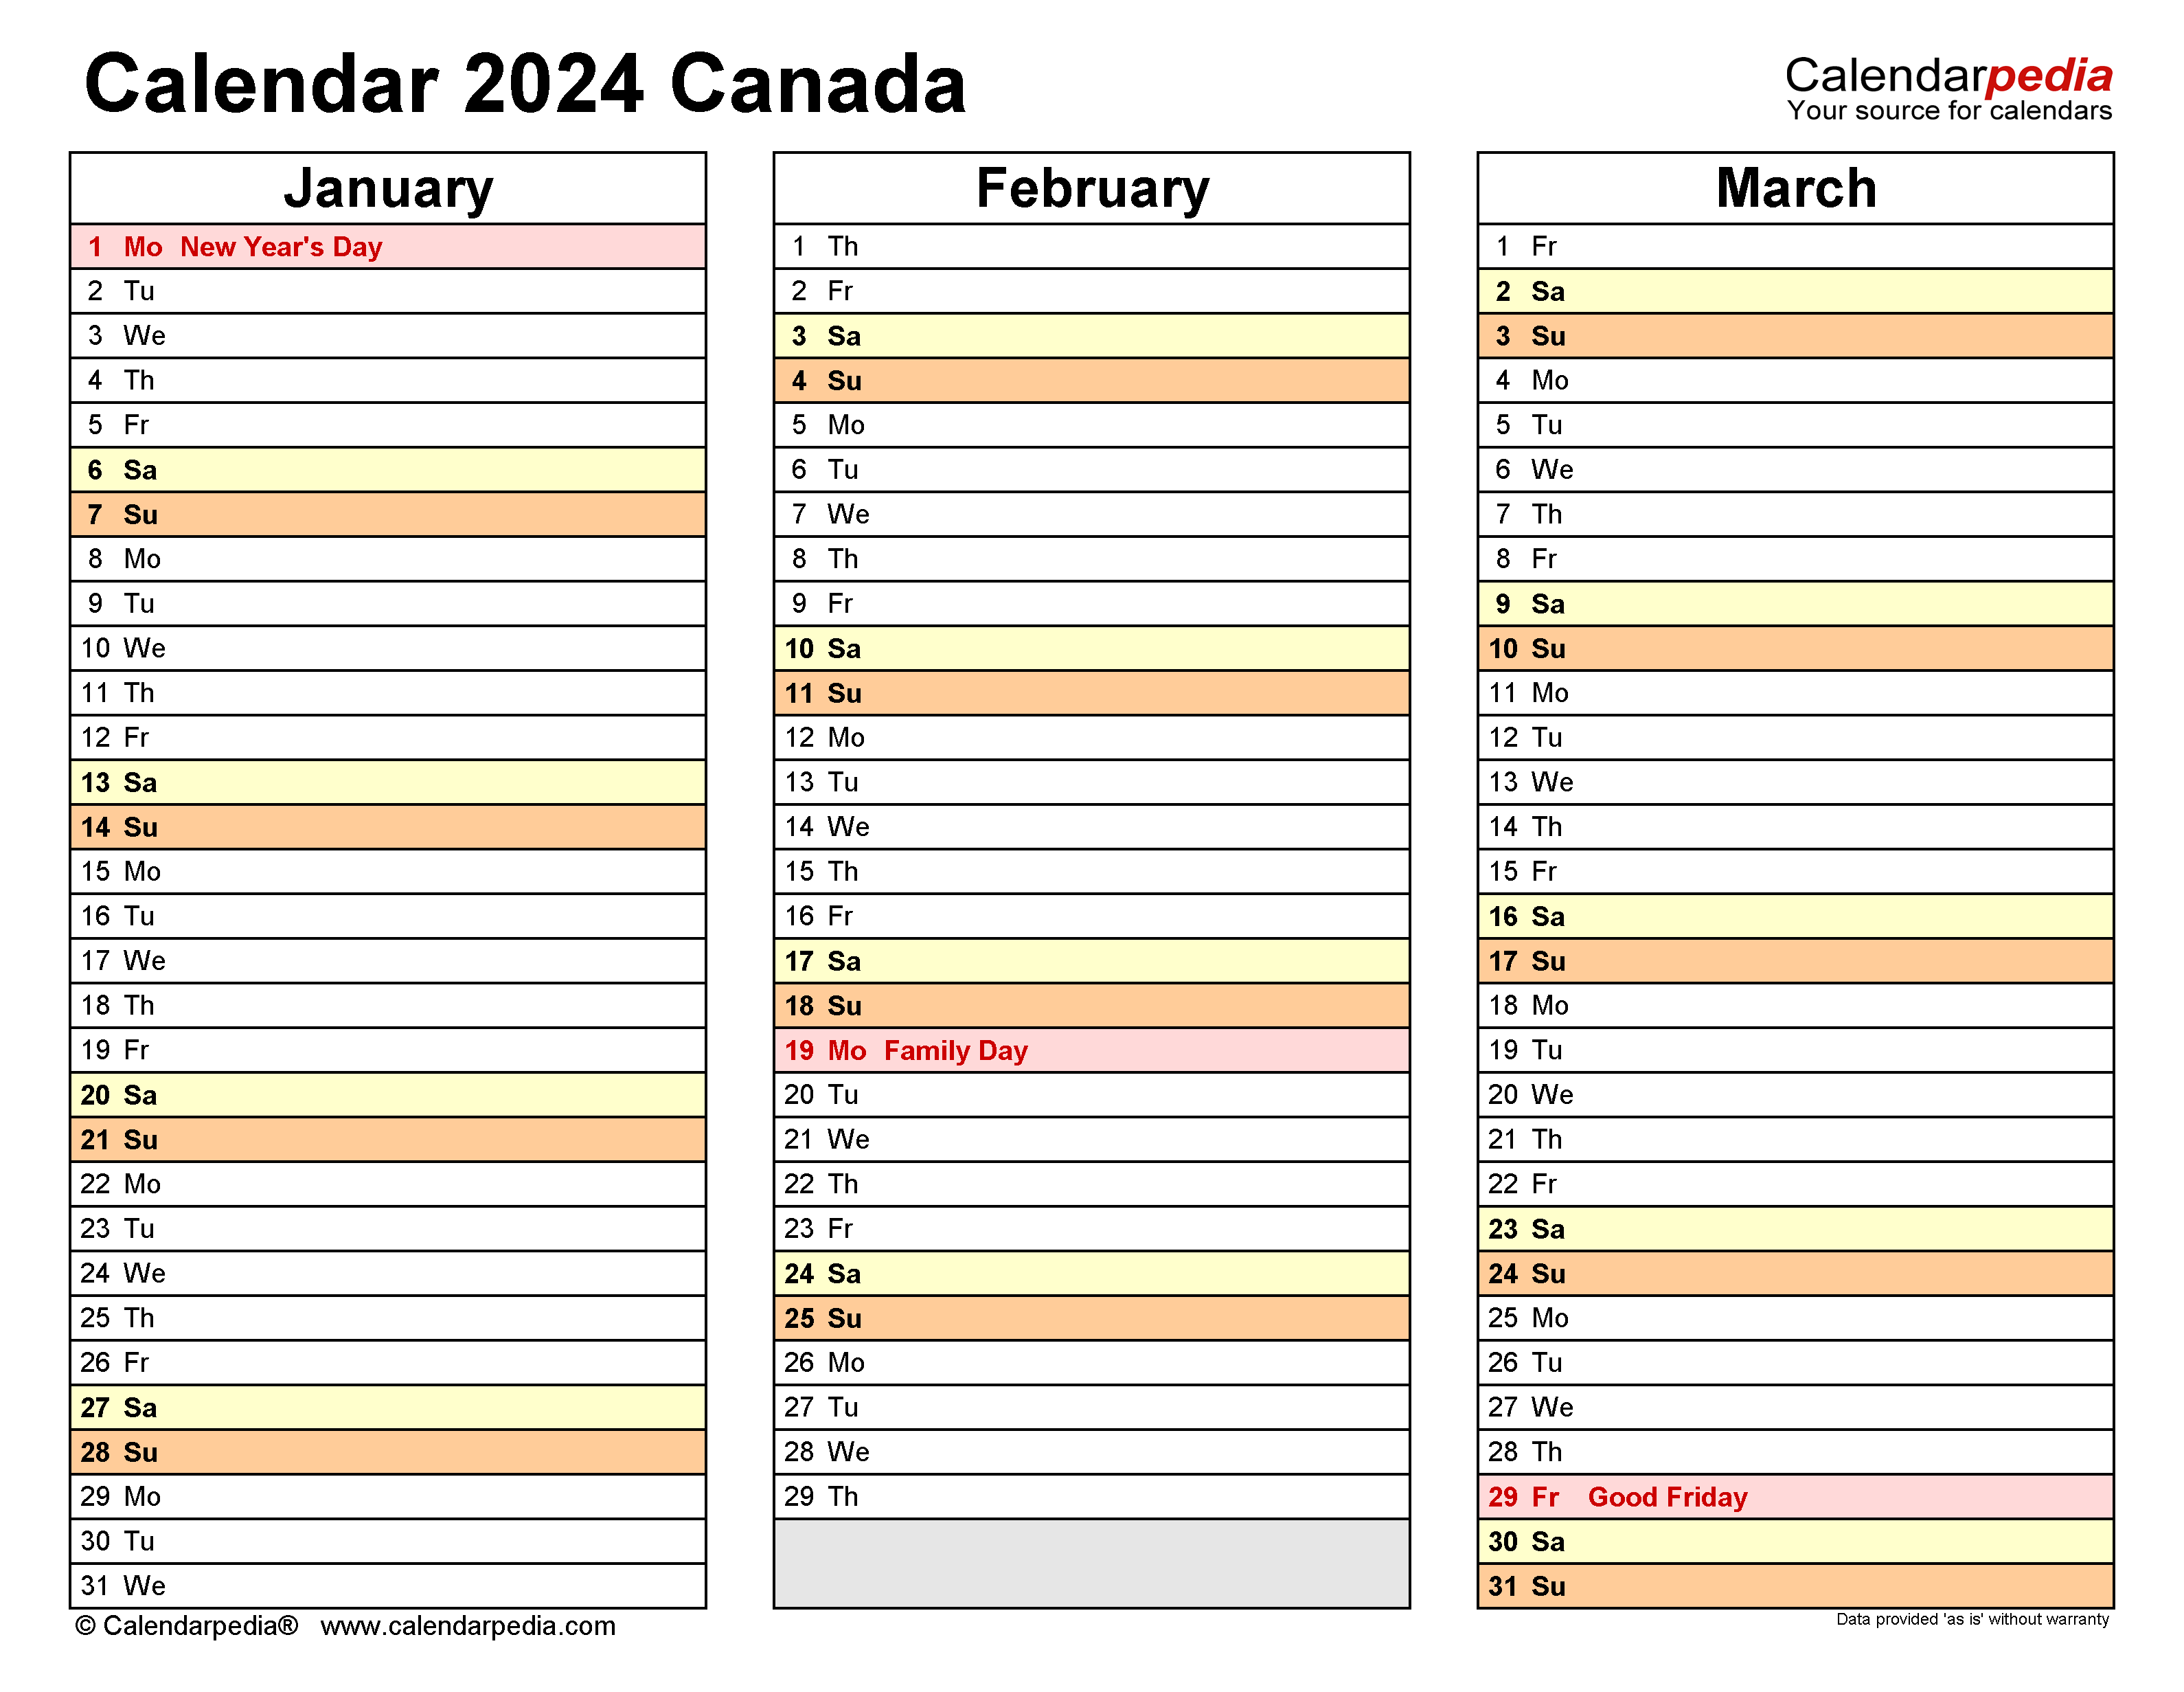 2024 Calendar Canada Printable Pdf 2024 CALENDAR PRINTABLE - Free Printable 2024 Calendar Canada Printable With Holidays